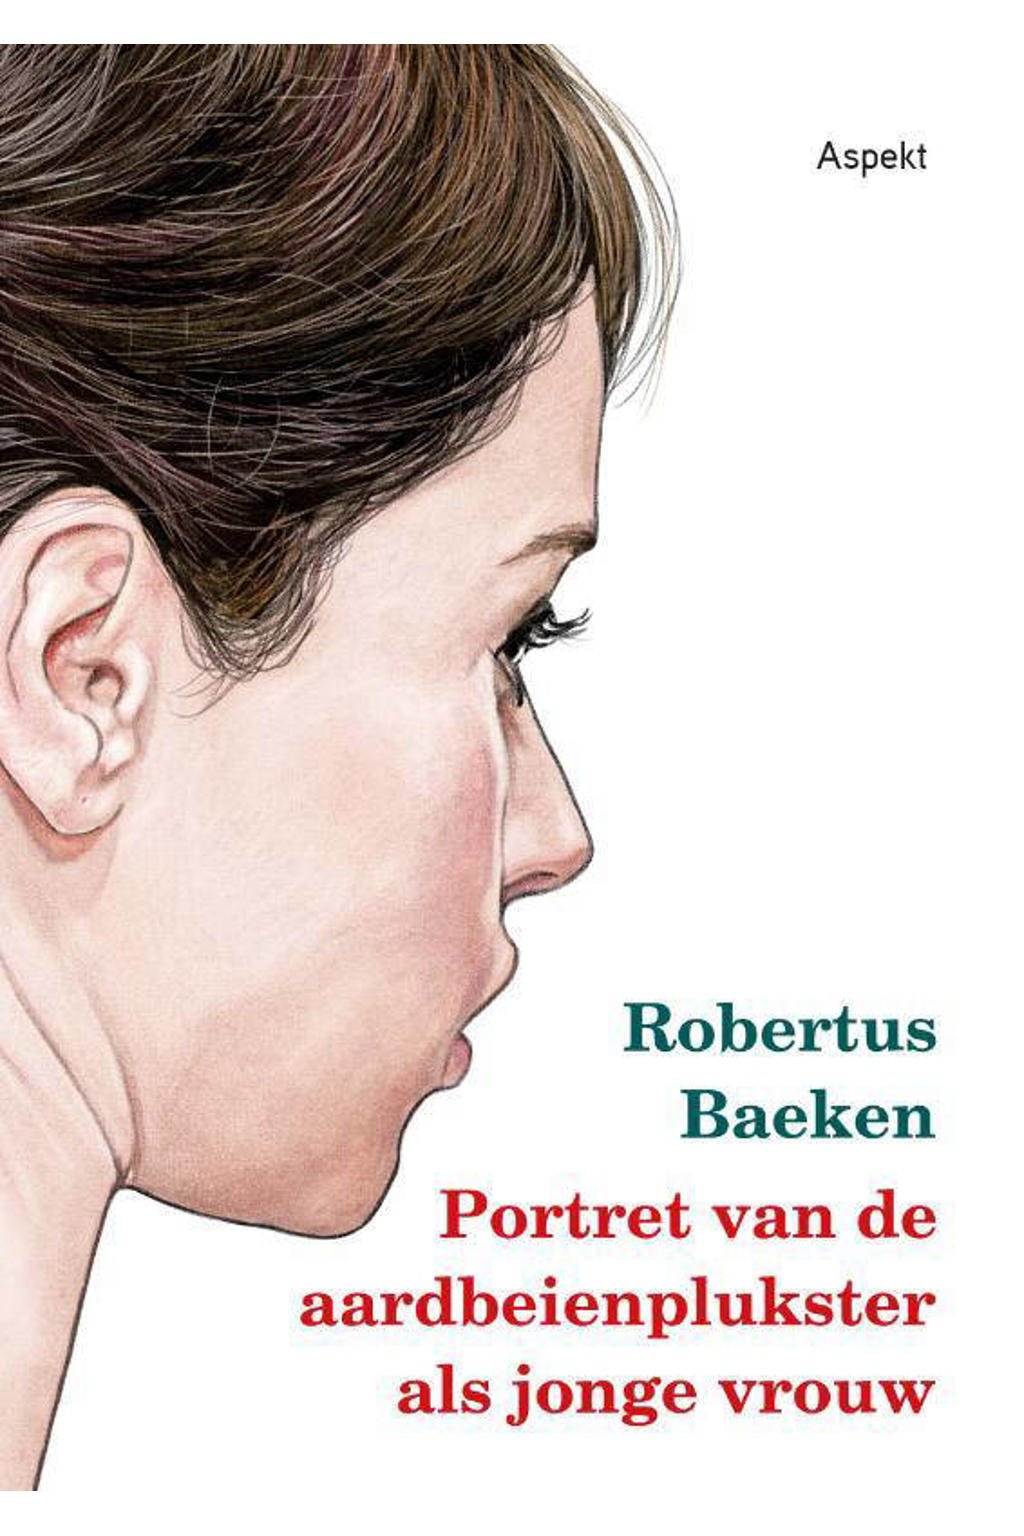 Portret van de aardbeienplukster als jonge vrouw - Robertus Baeken